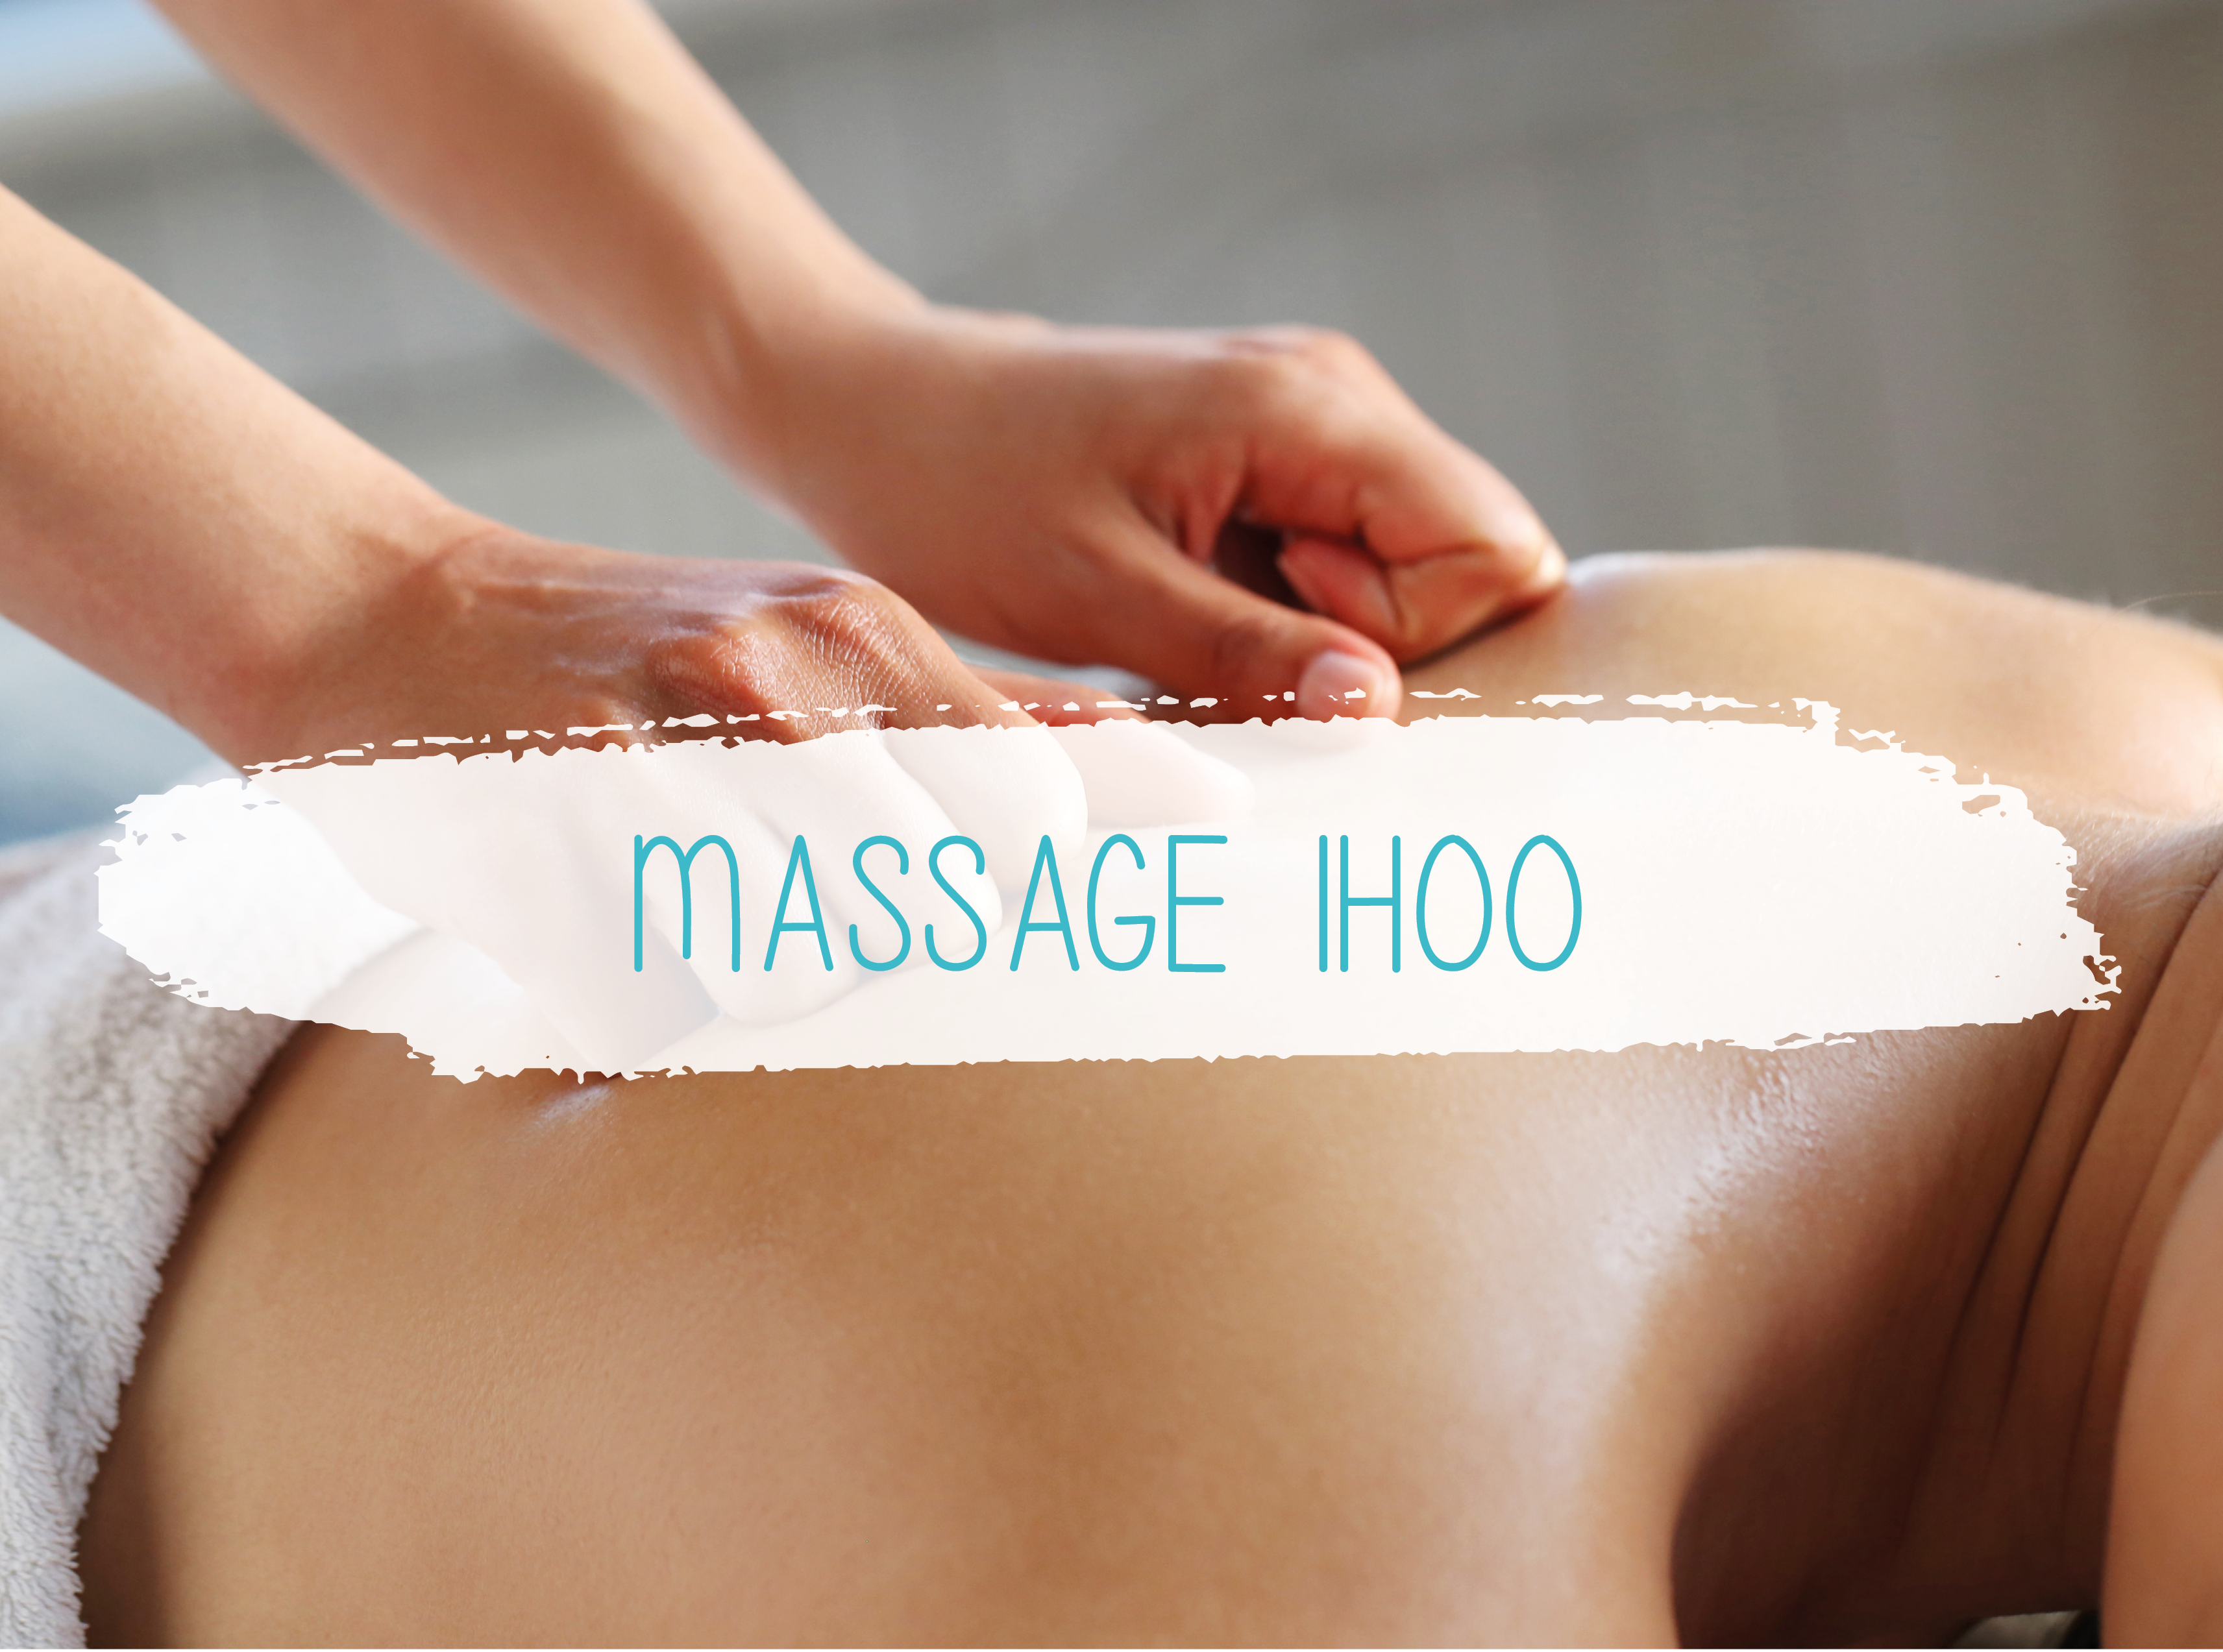 Image d'un massage du dos pour illustrer les massages d'1h00 de Thala'Club.